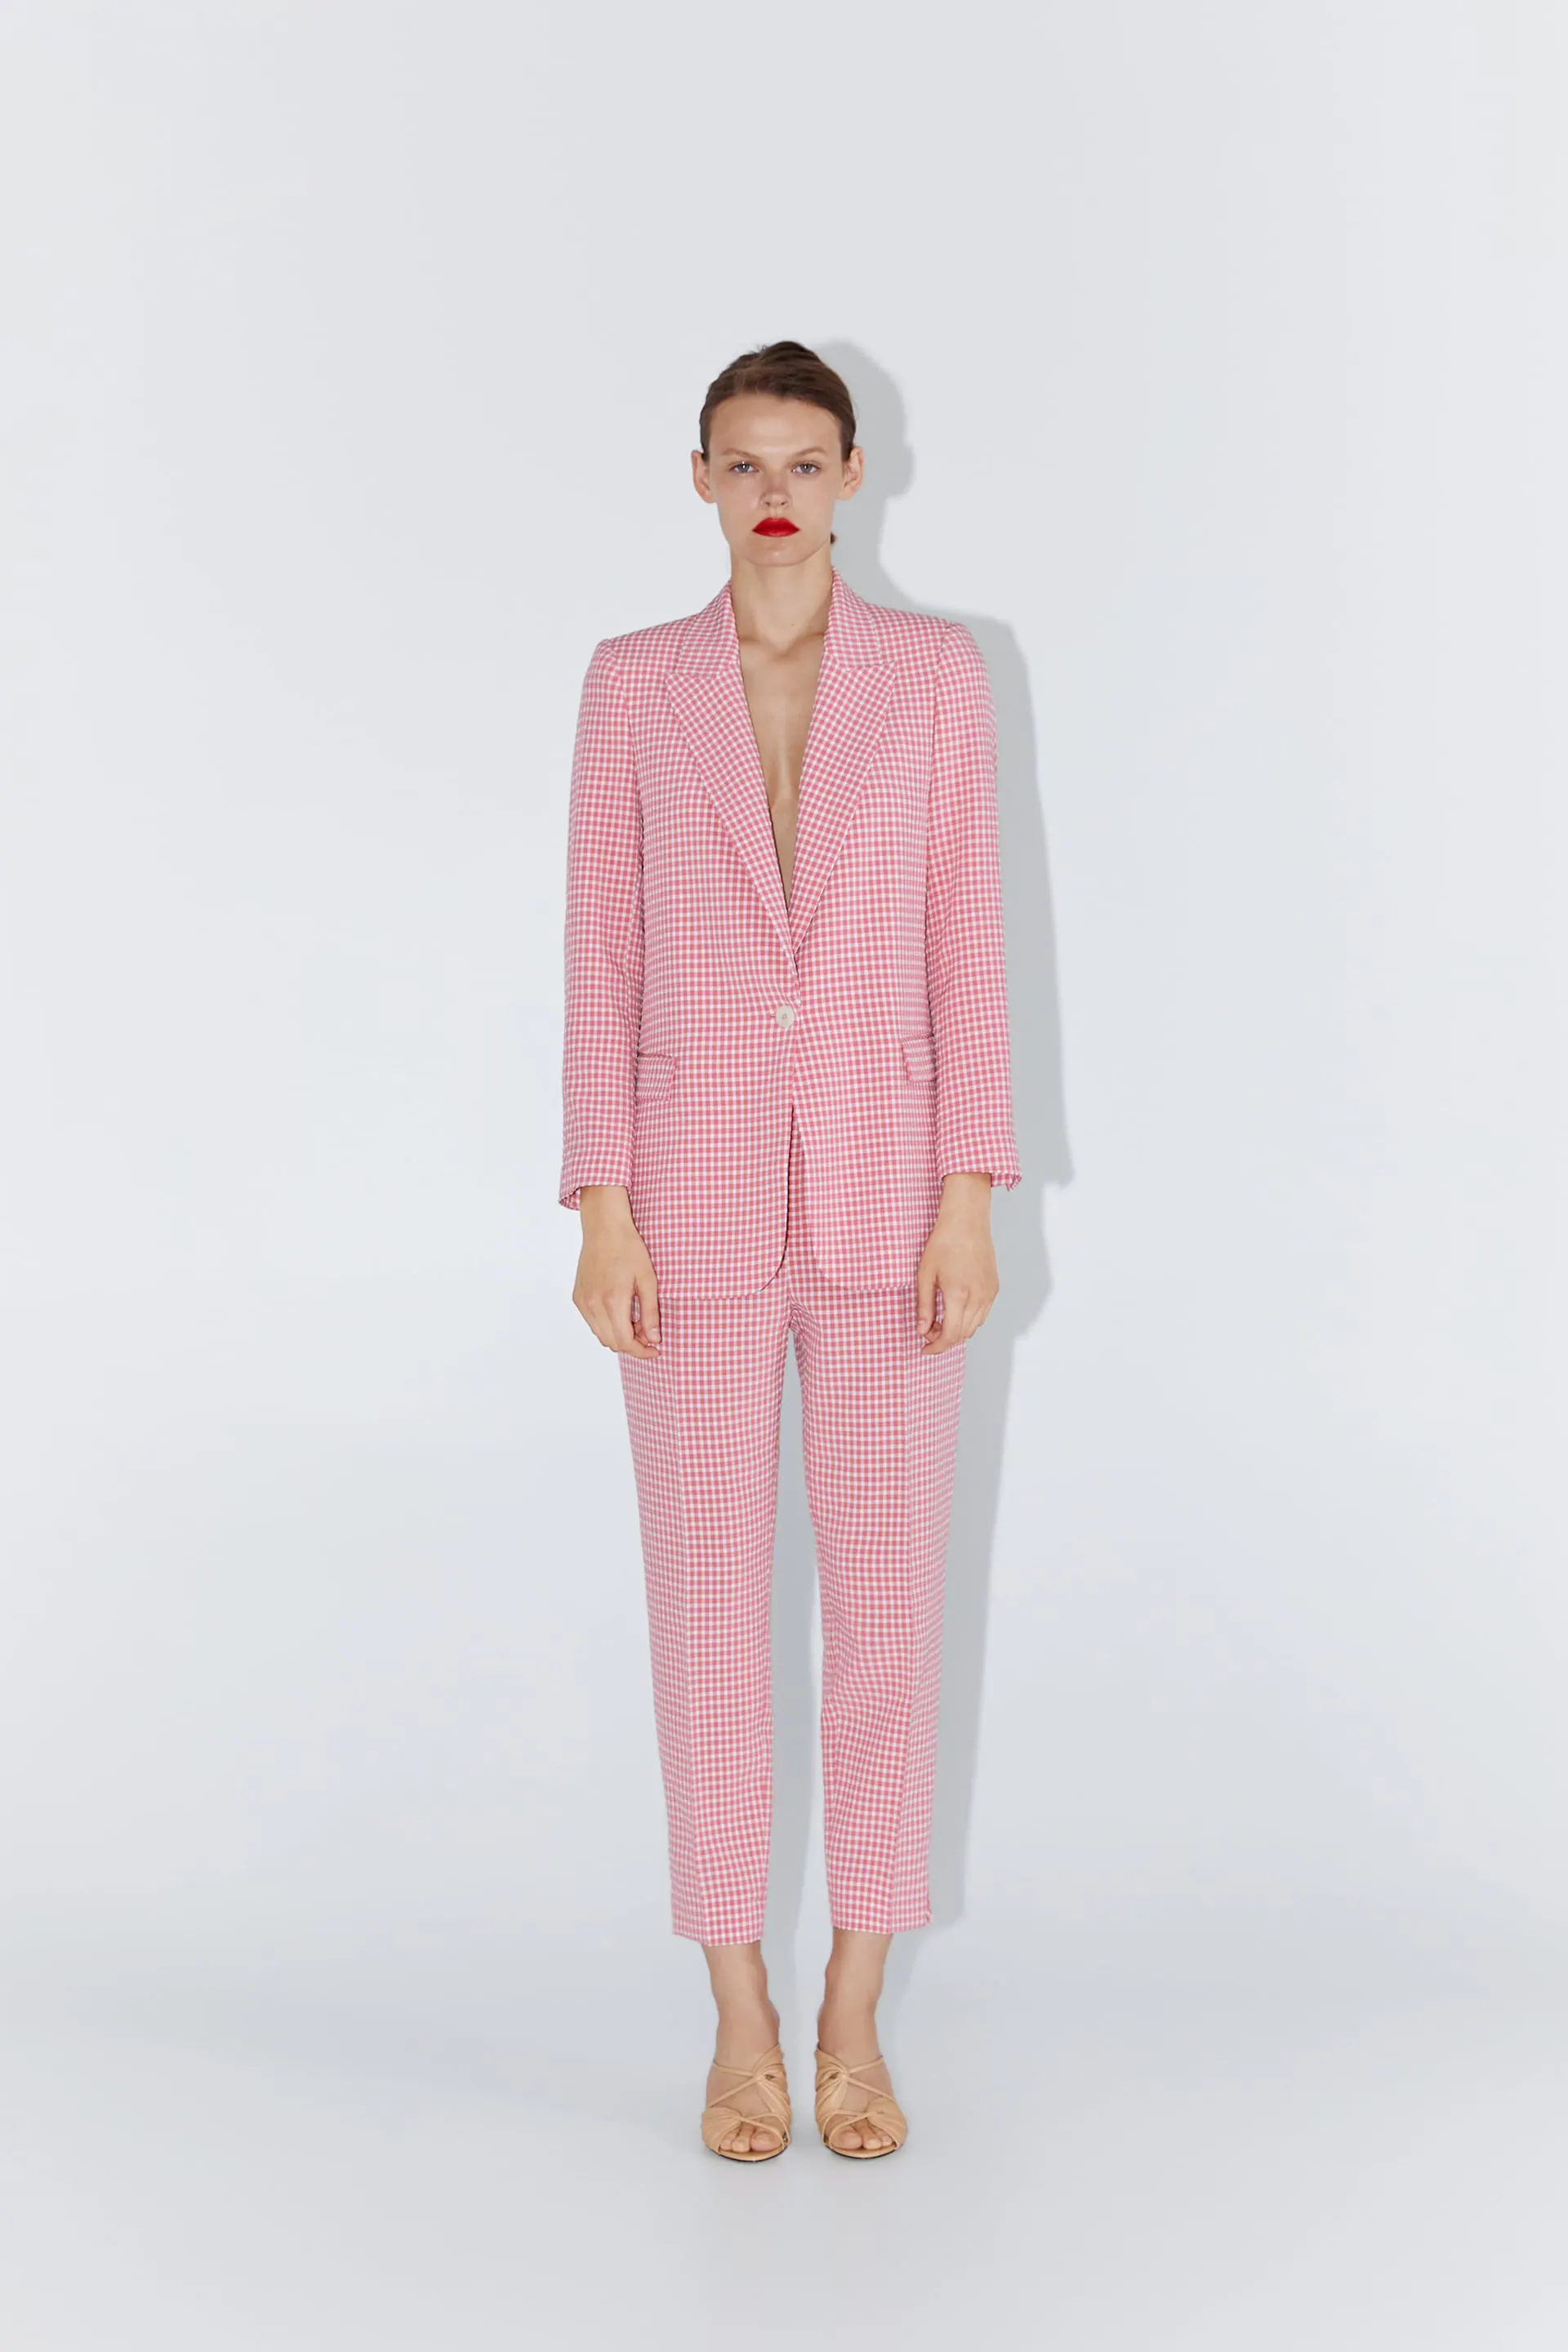 1. Blazer a cuadros rosas y blancos de la firma Zara (19,99 euros). 